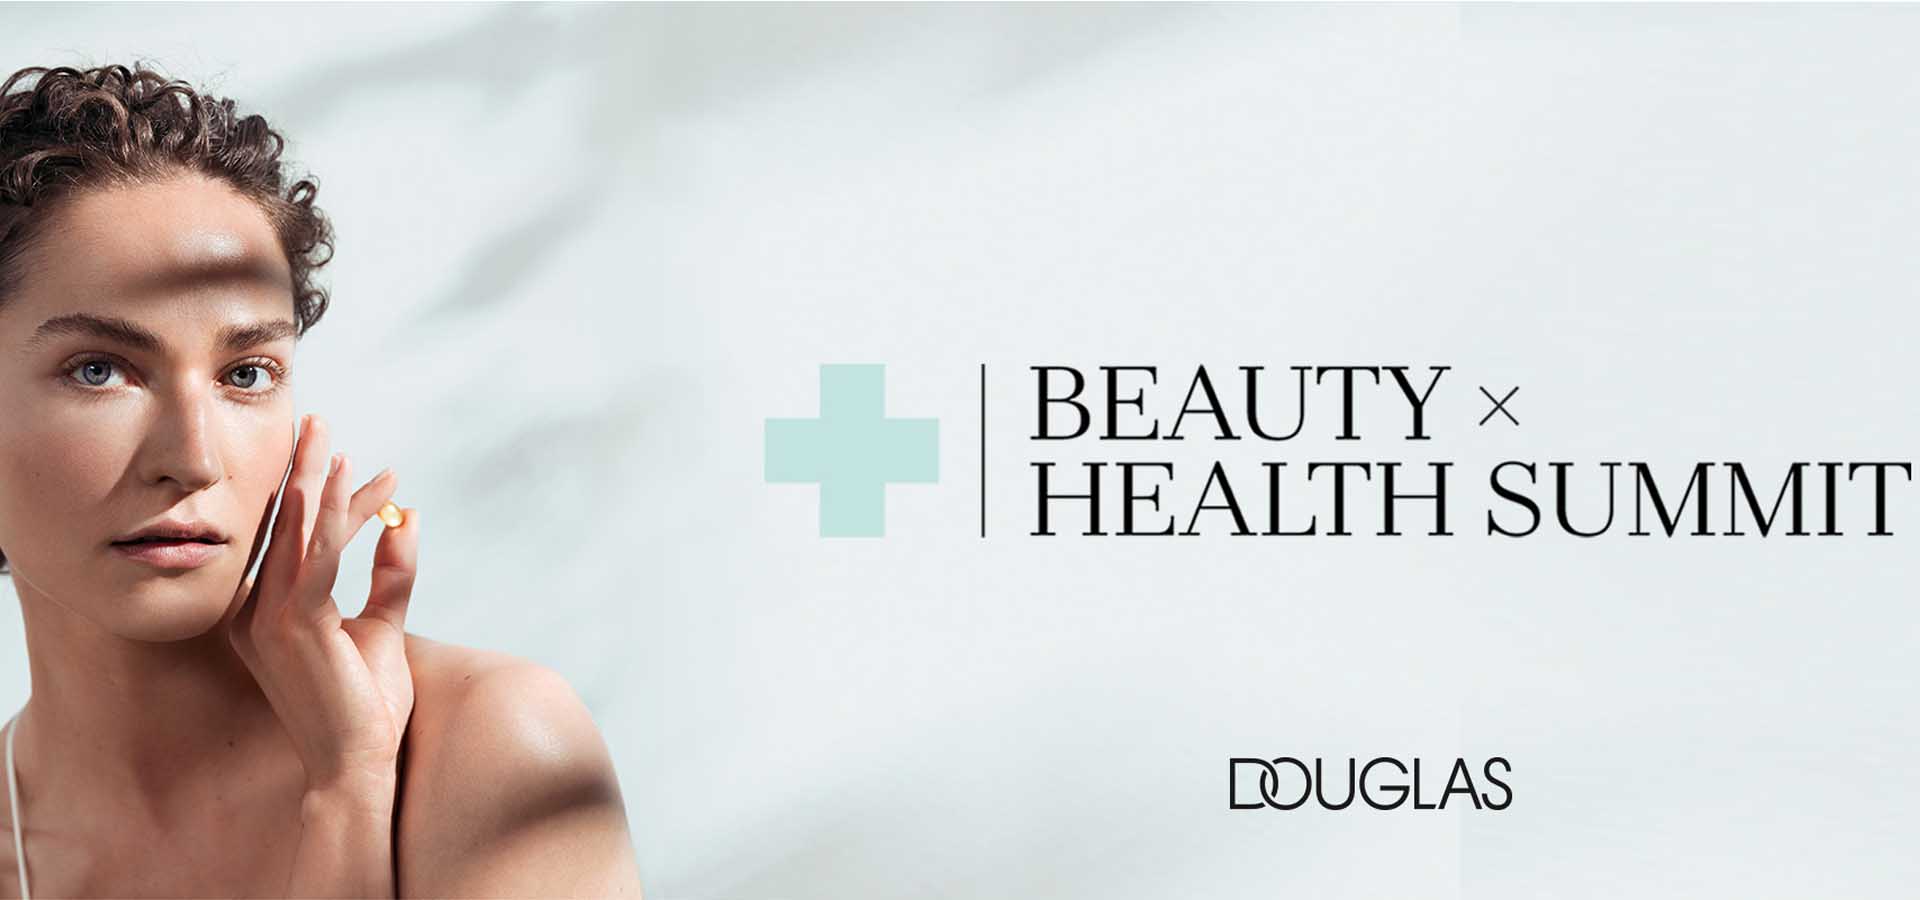 Beauty + Health Summit